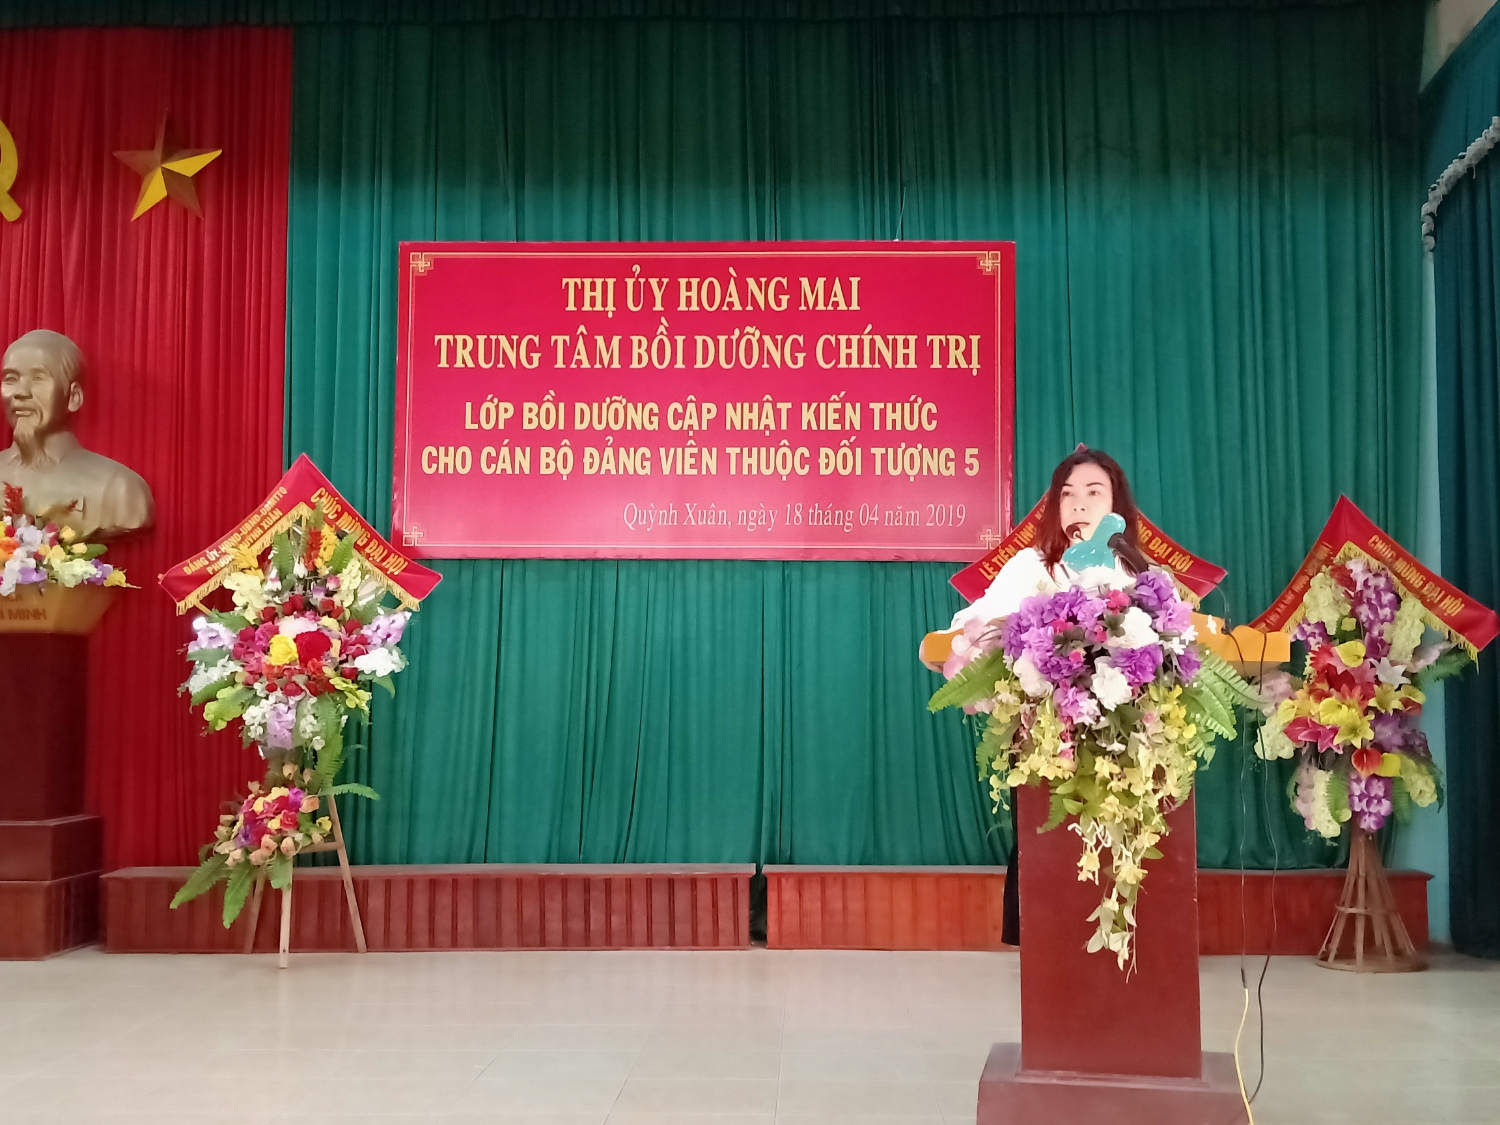 Đồng chí Trần Thị Bích, Thị ủy viên, Phó giám đốc Trung tâm BDCT thị xã khai giảng lớp cập nhật kiến thức.